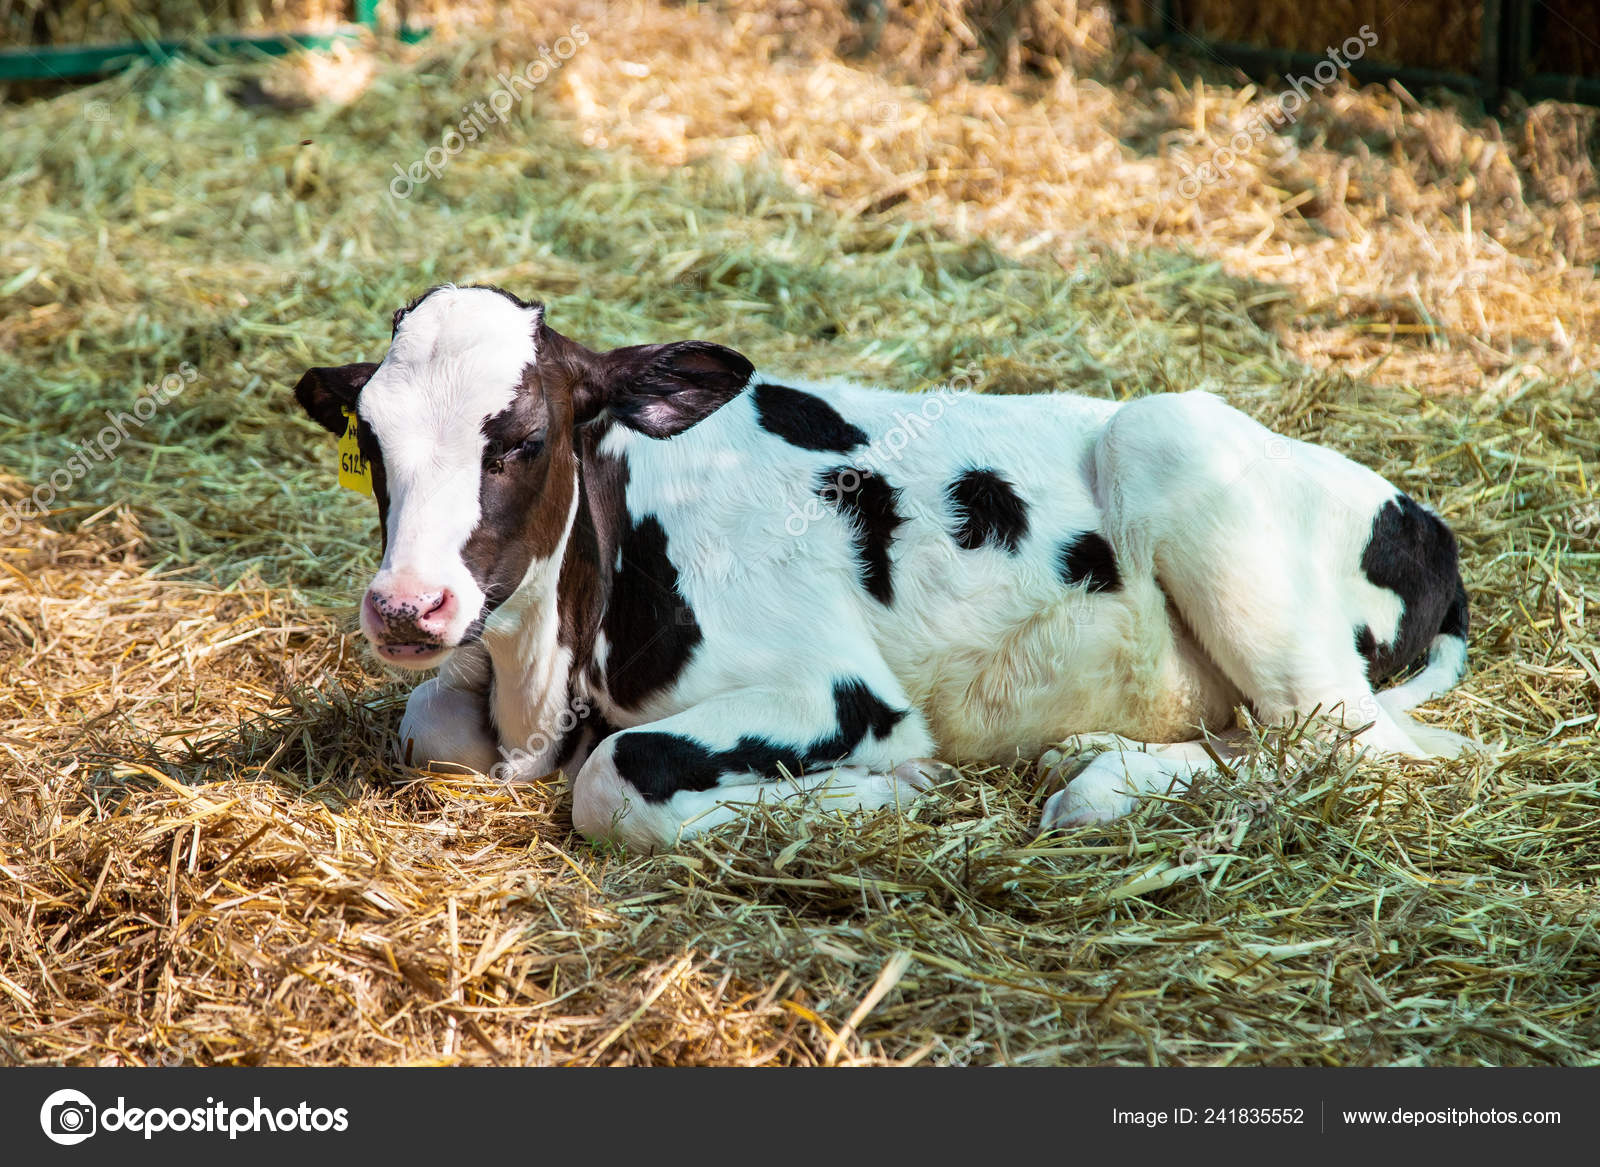 Stockfoto's van koe, rechtenvrije afbeeldingen van Baby koe | Depositphotos